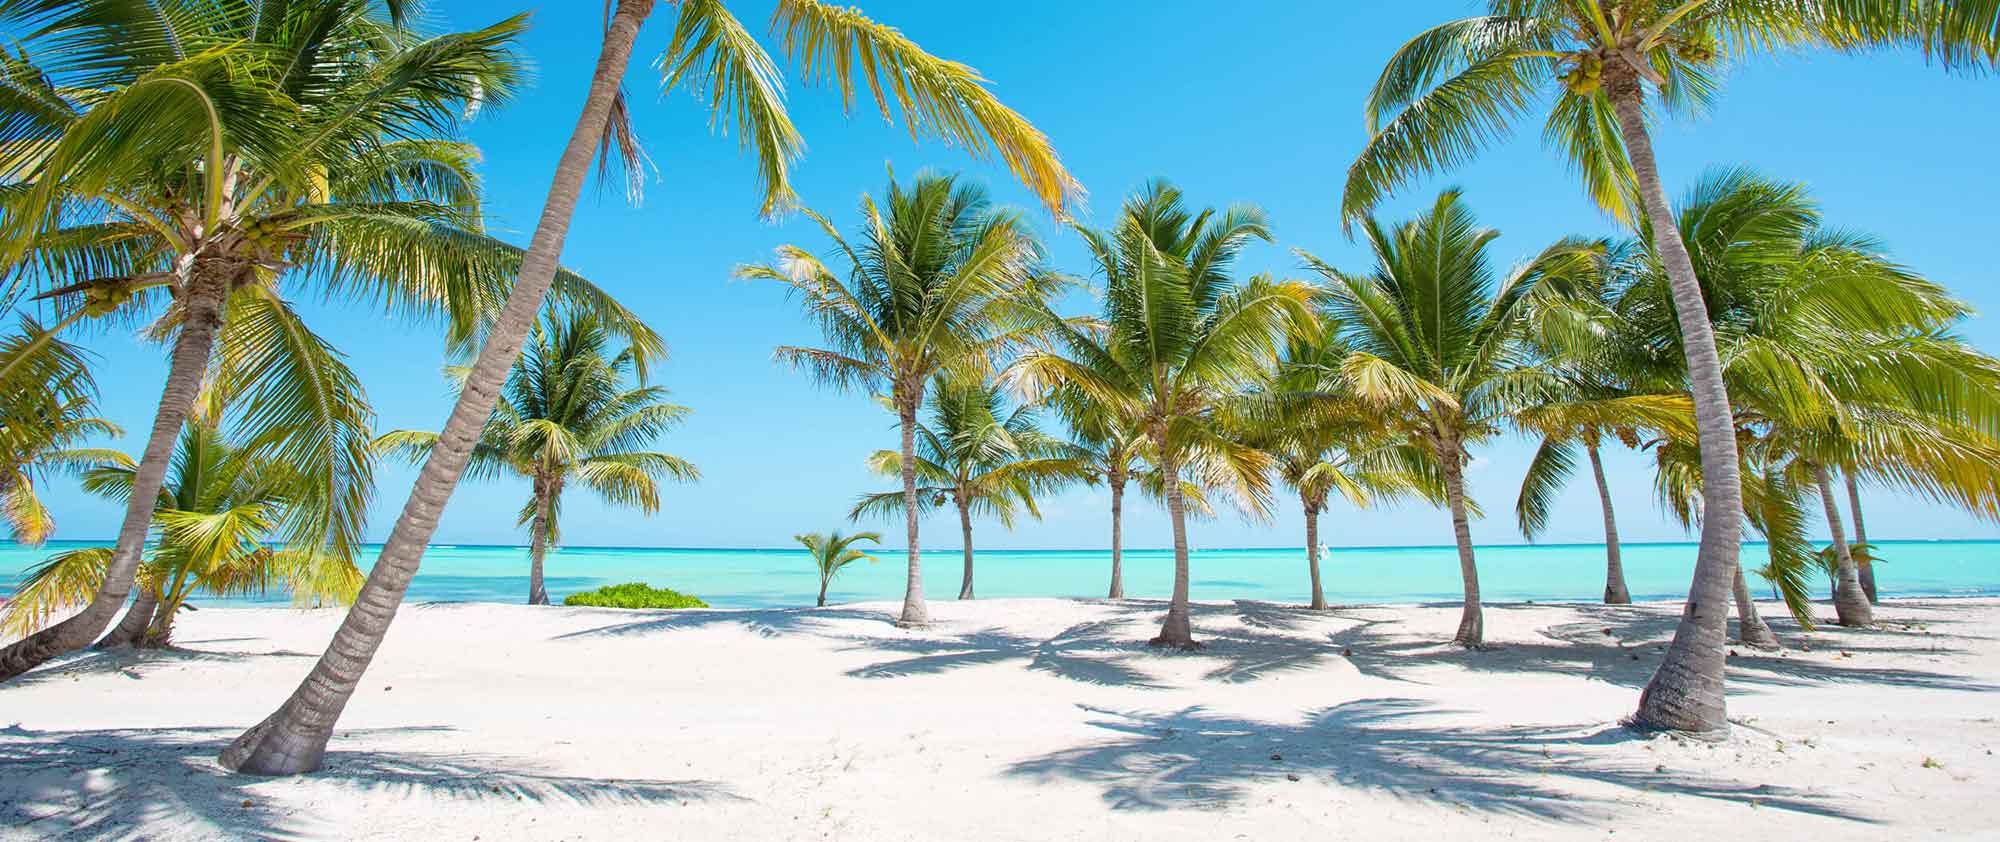 una spiaggia candida della repubblica dominicana piena di palme